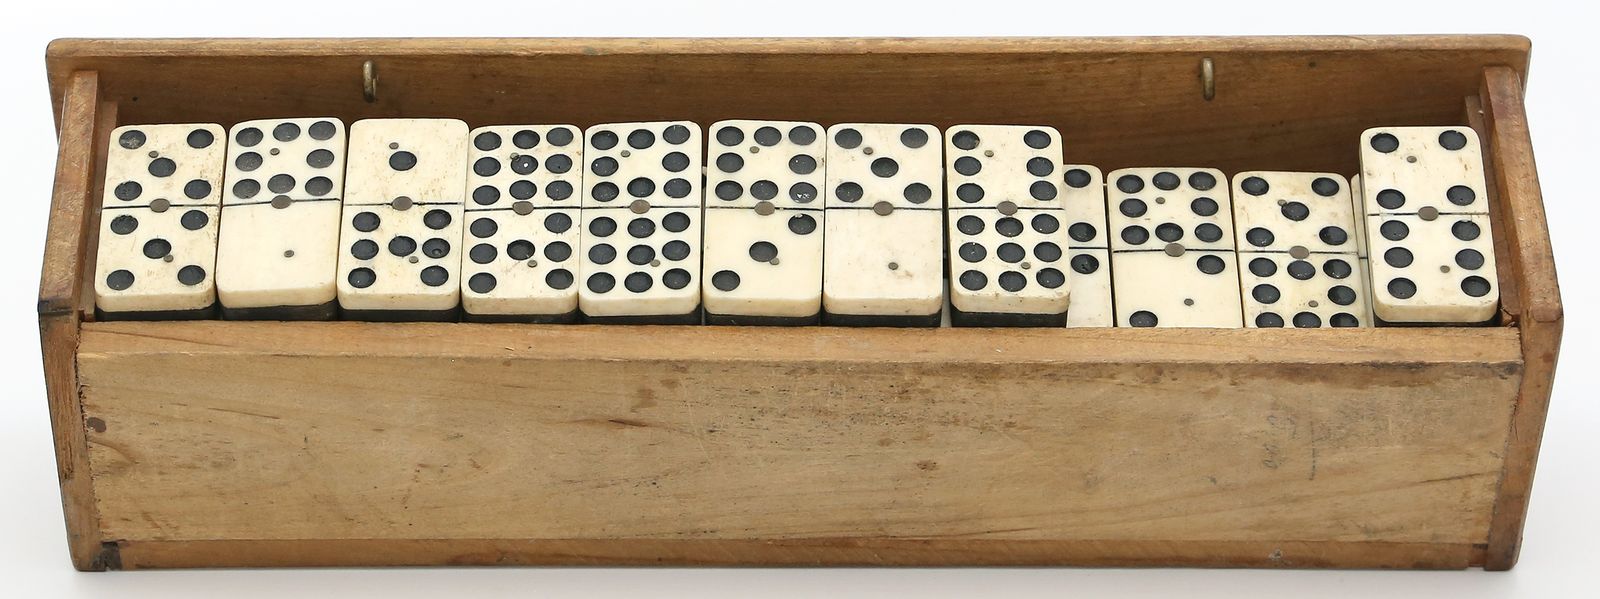 Dominospiel.